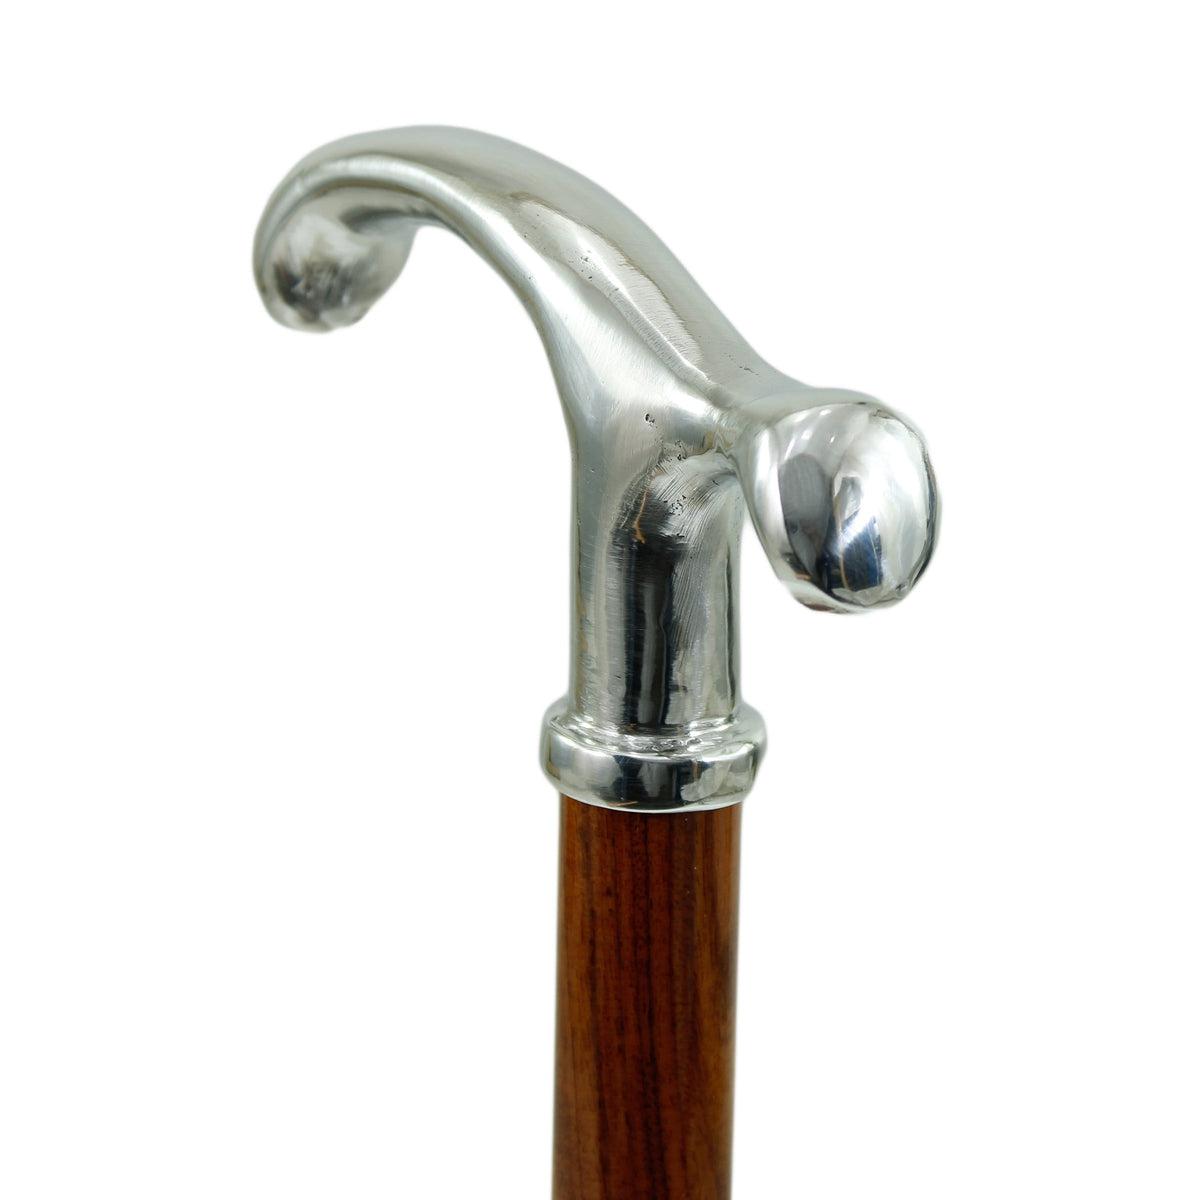 Custom Pure Pewter Elegant Fritz Handle Cane Or Walking Stick